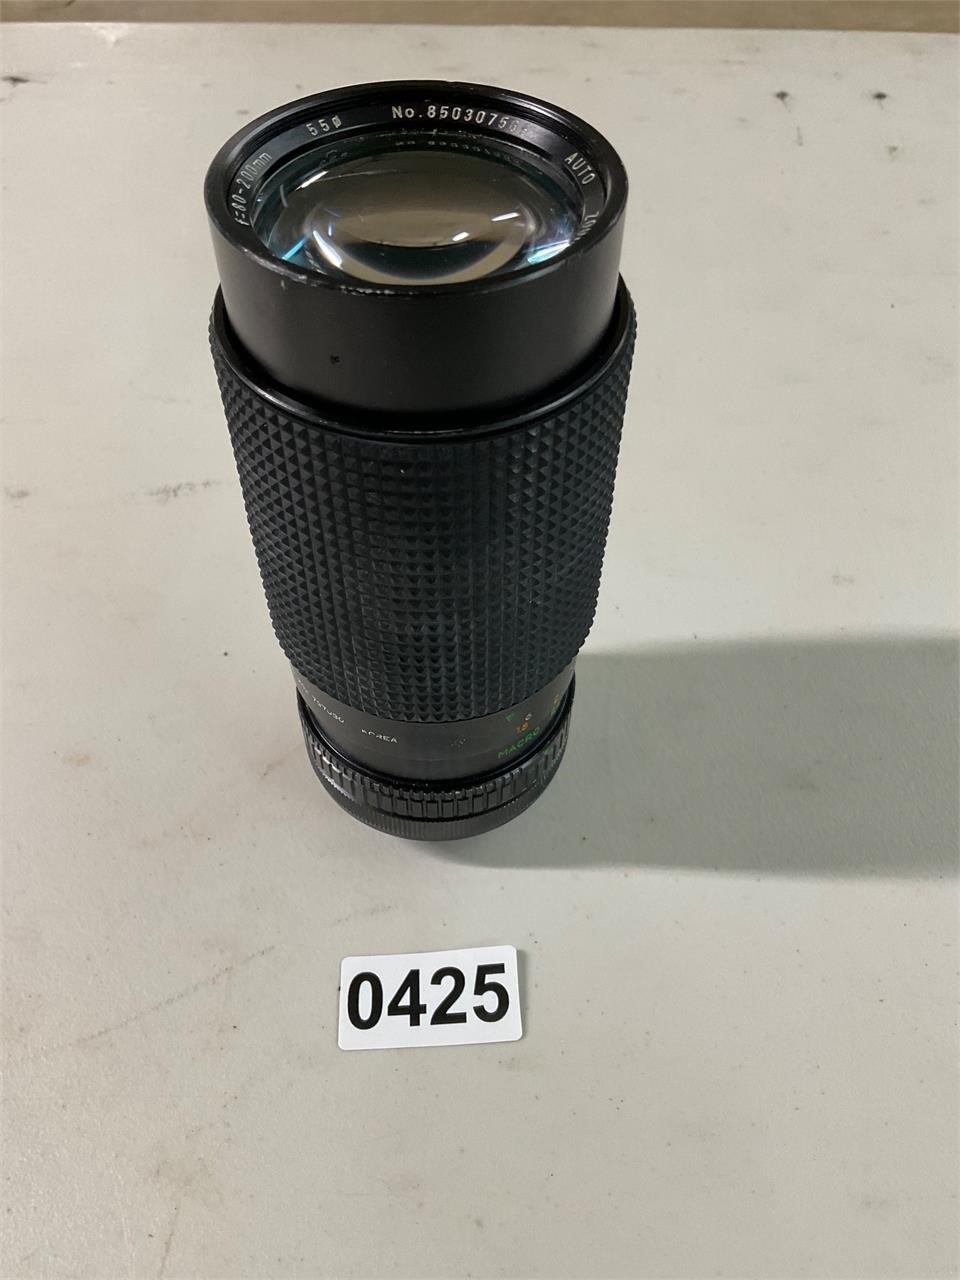 Auto Zoom- 80-200 mm 1: 4.0 lens